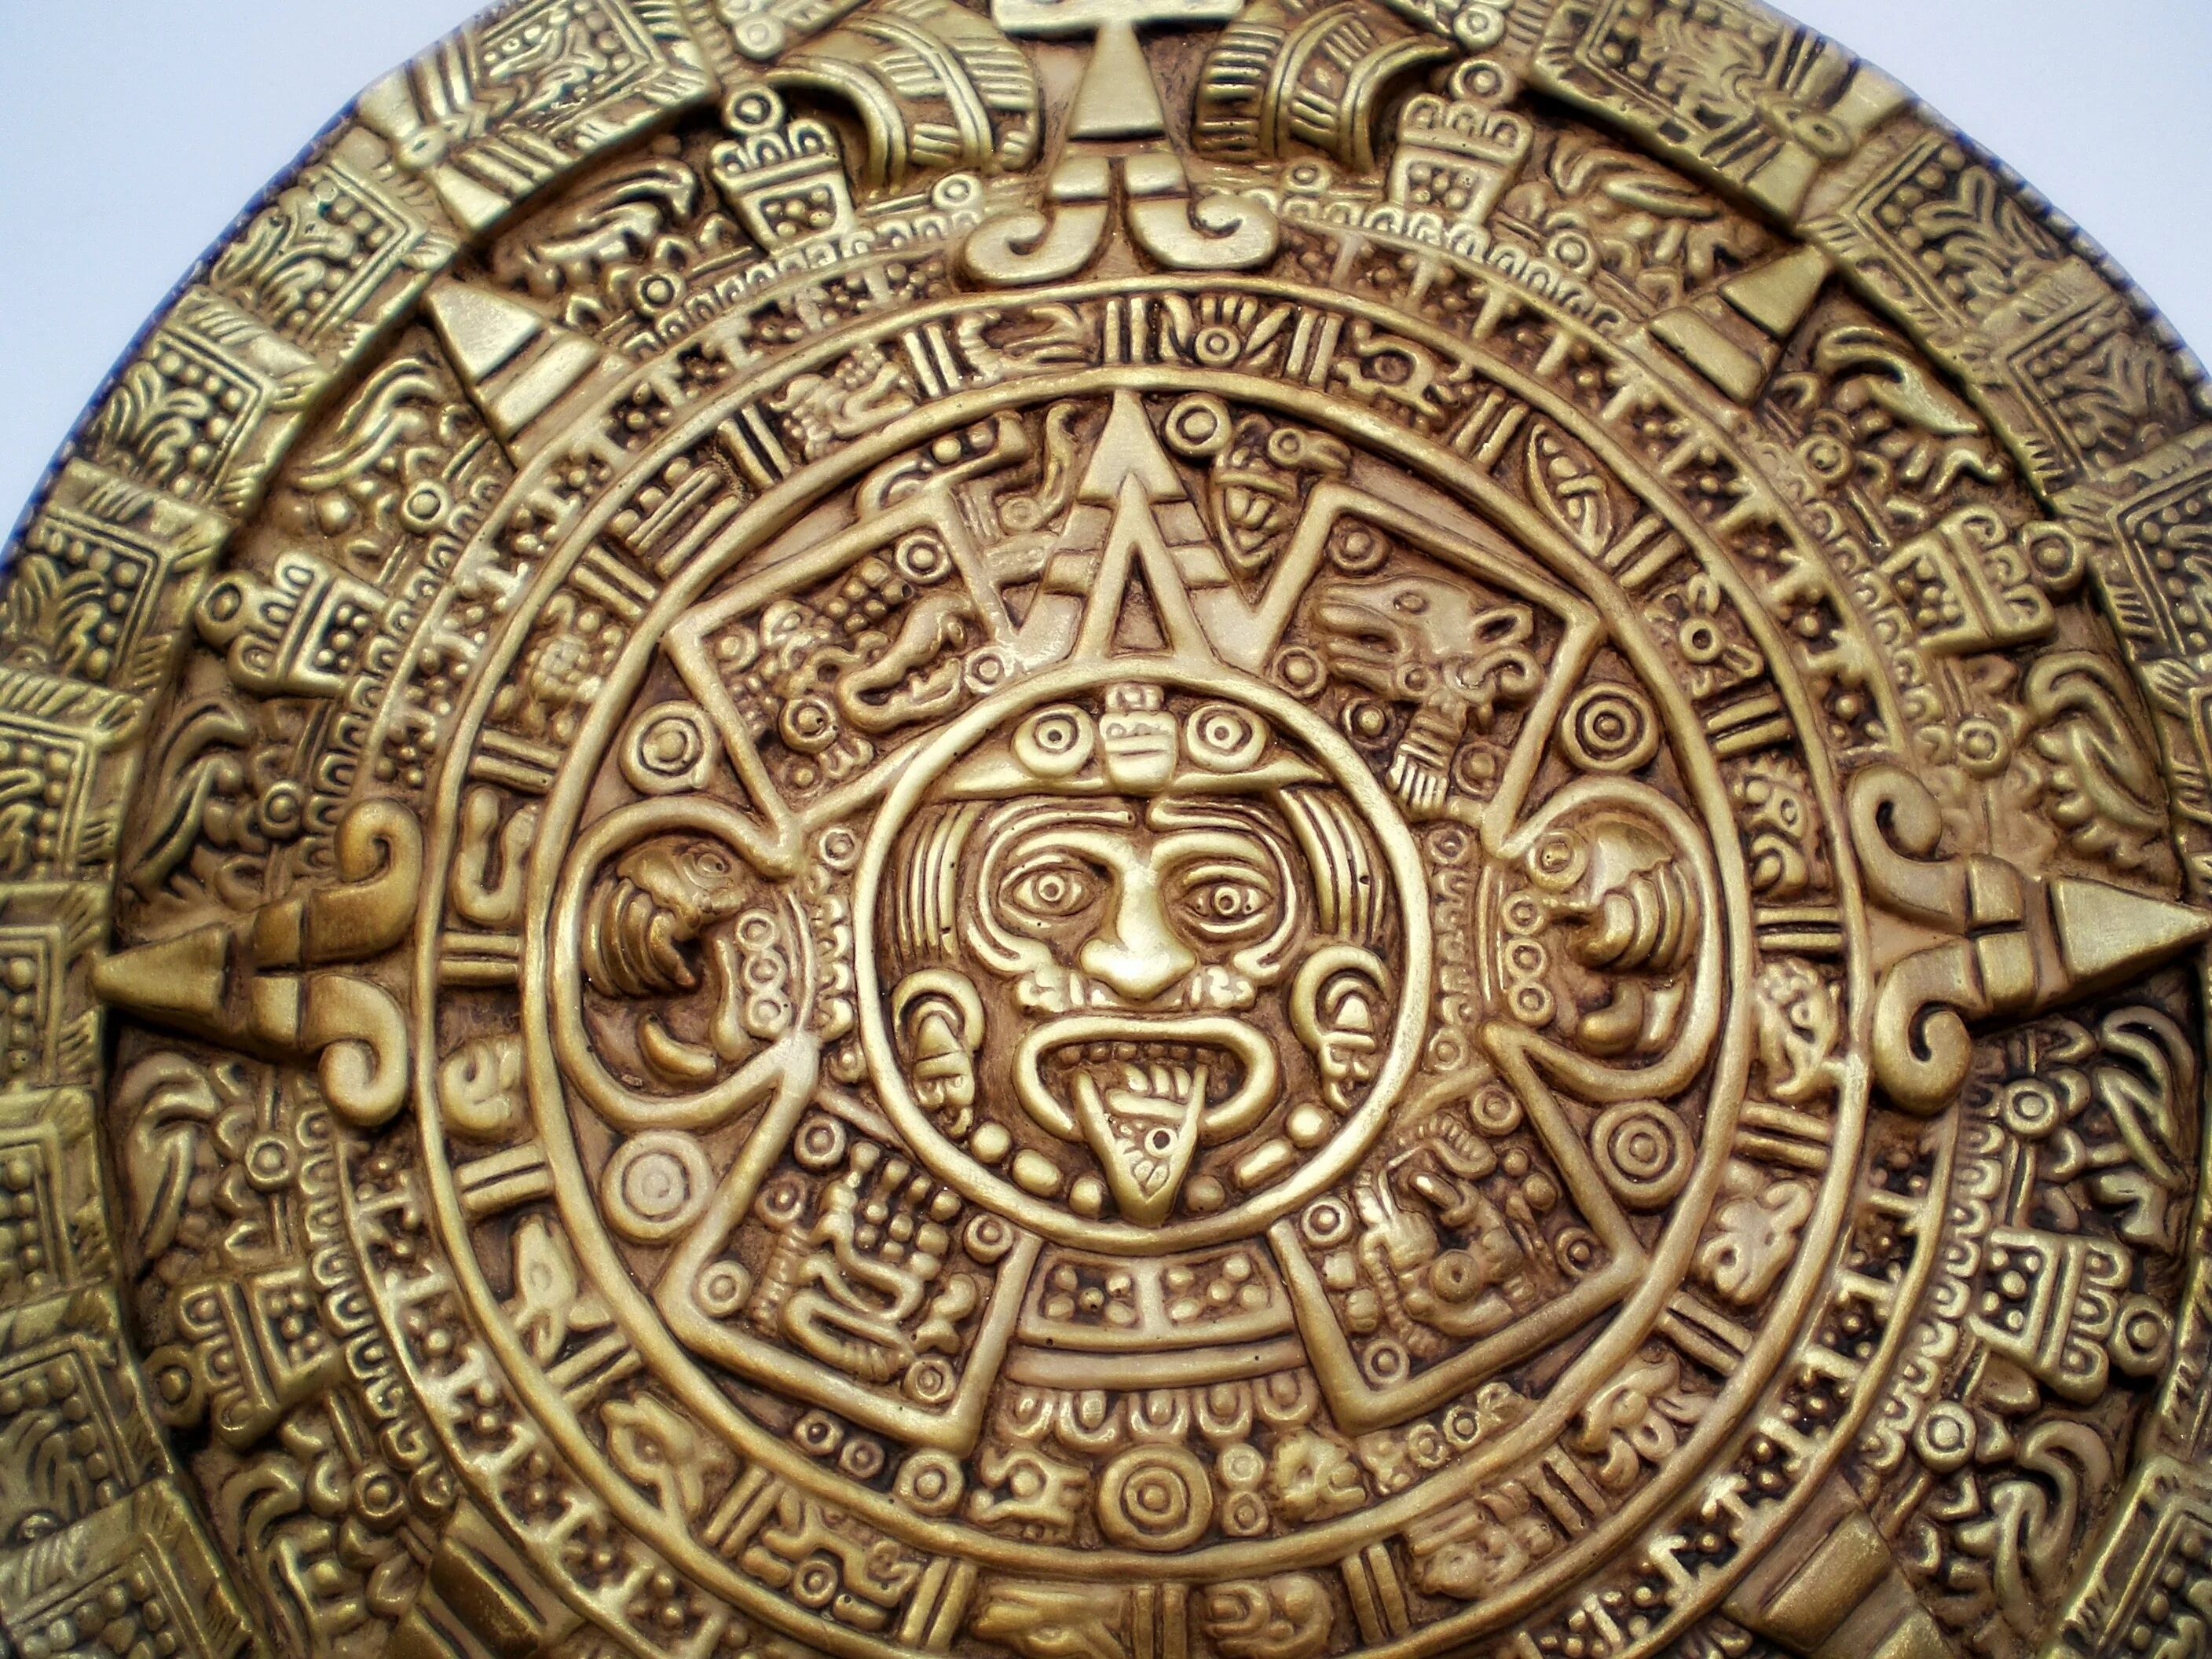 Календарь майя почему так назван. Солнечный календарь Майя. Календарь индейцев Майя. Камень солнца ацтеков. Календарный круг Майя.